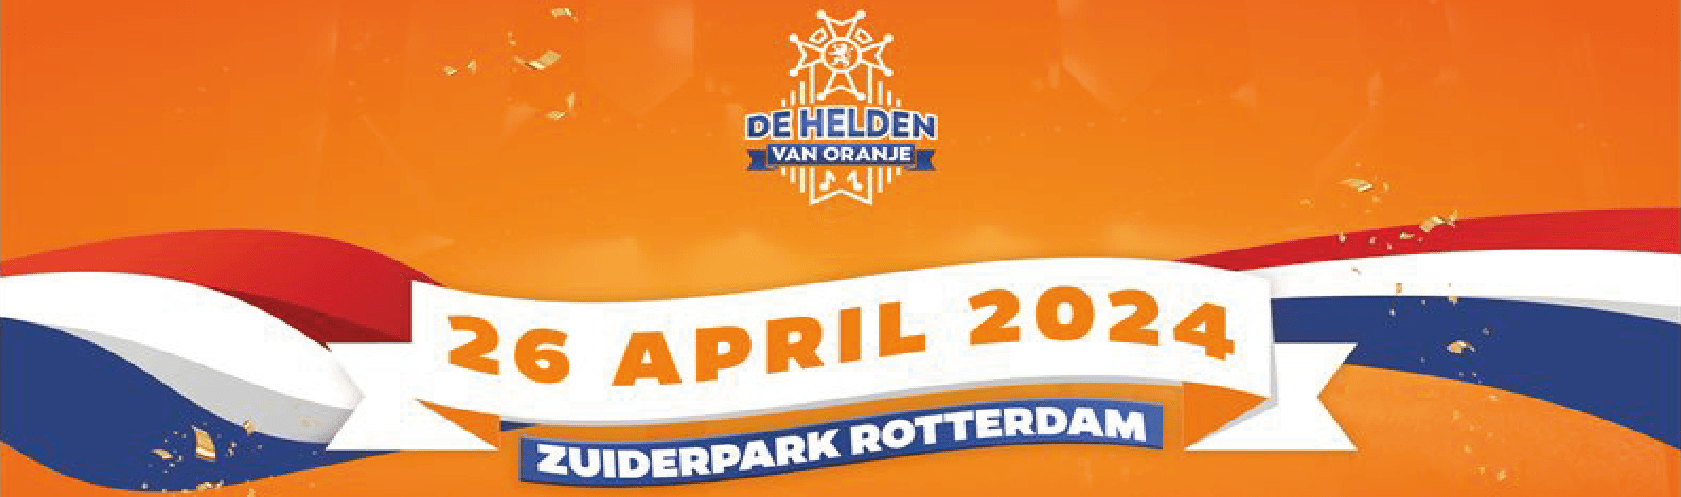 De Helden van Oranje - Rotterdam banner_large_desktop